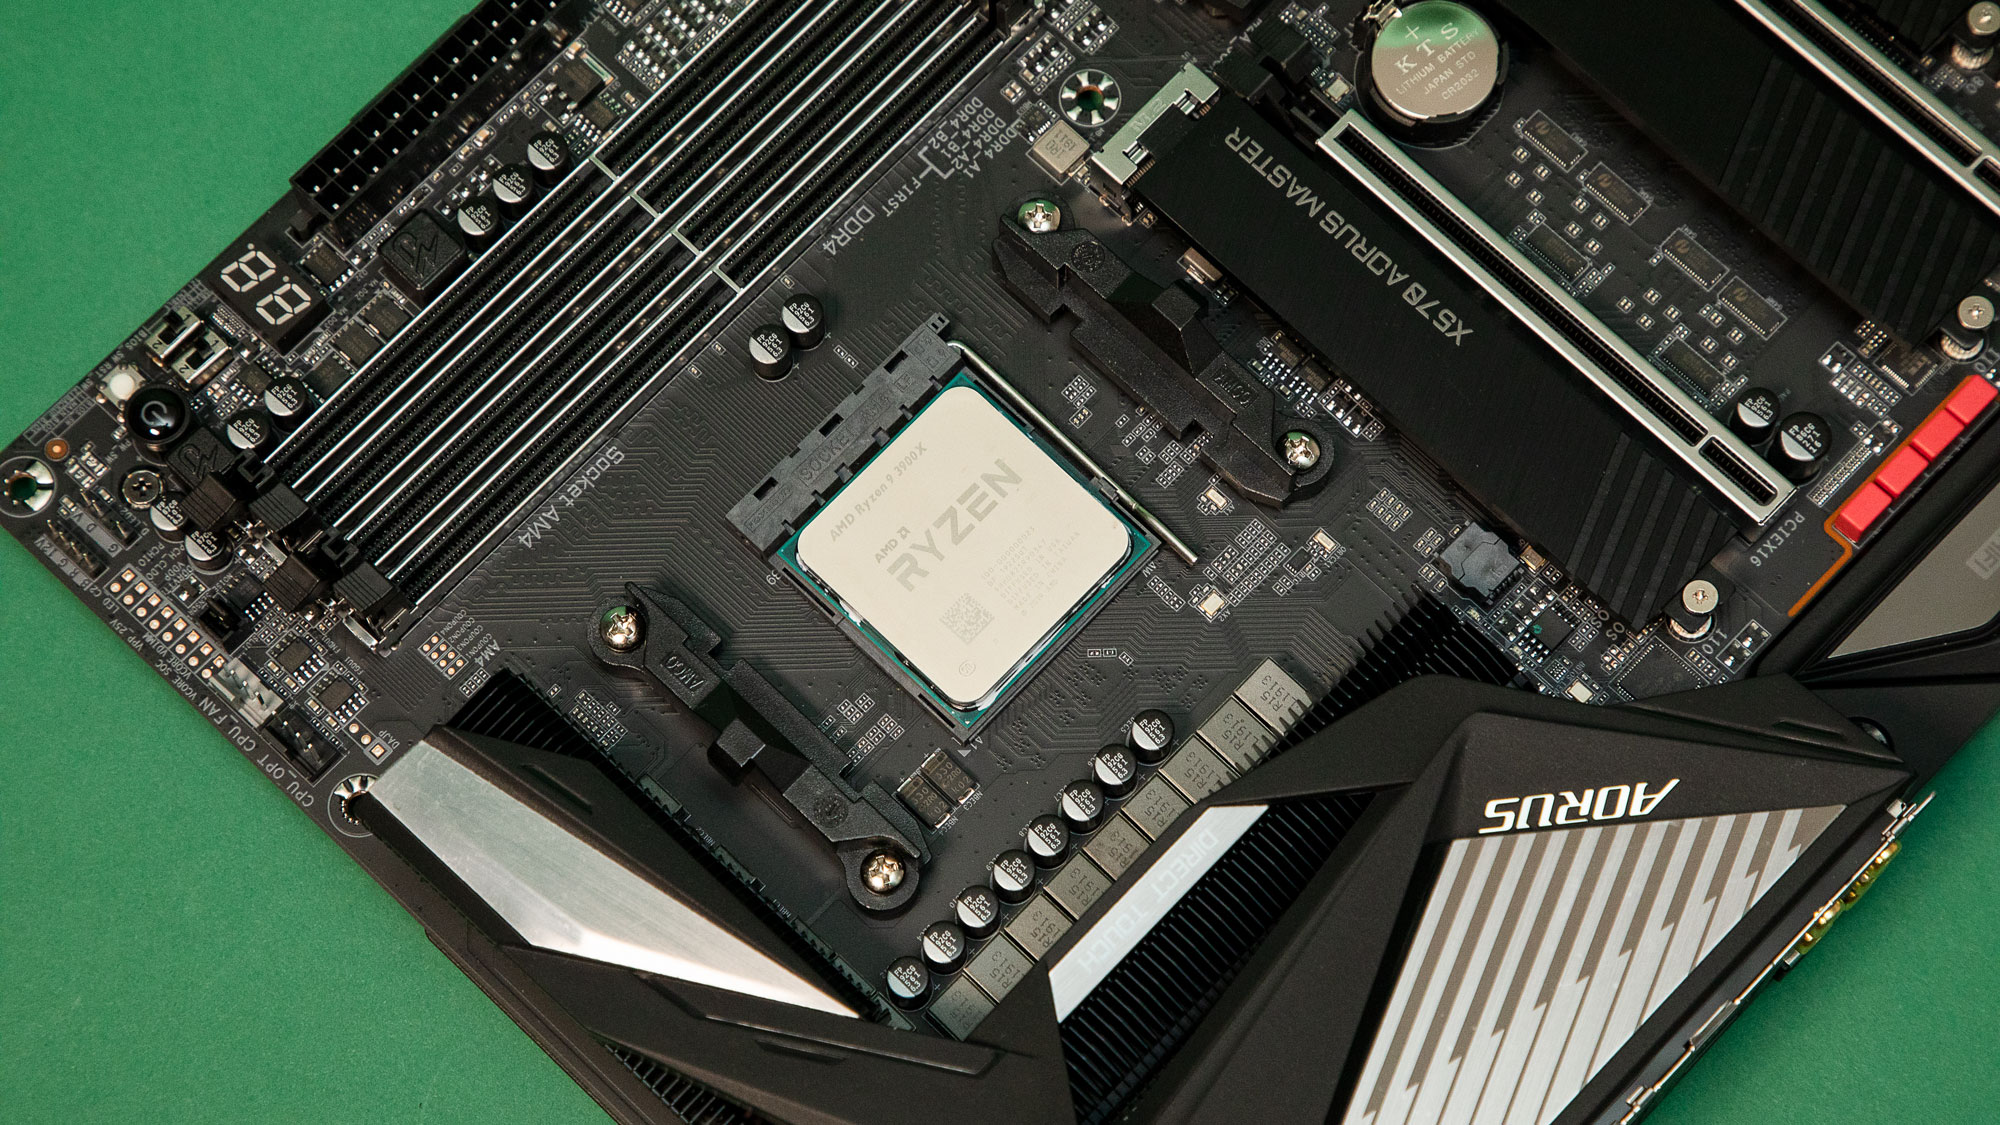 يمكن لشائعات AMD Ryzen 5 3500 أن تستخرج وحدات المعالجة المركزية من إنتل التي تمر بهذا التسريب 2